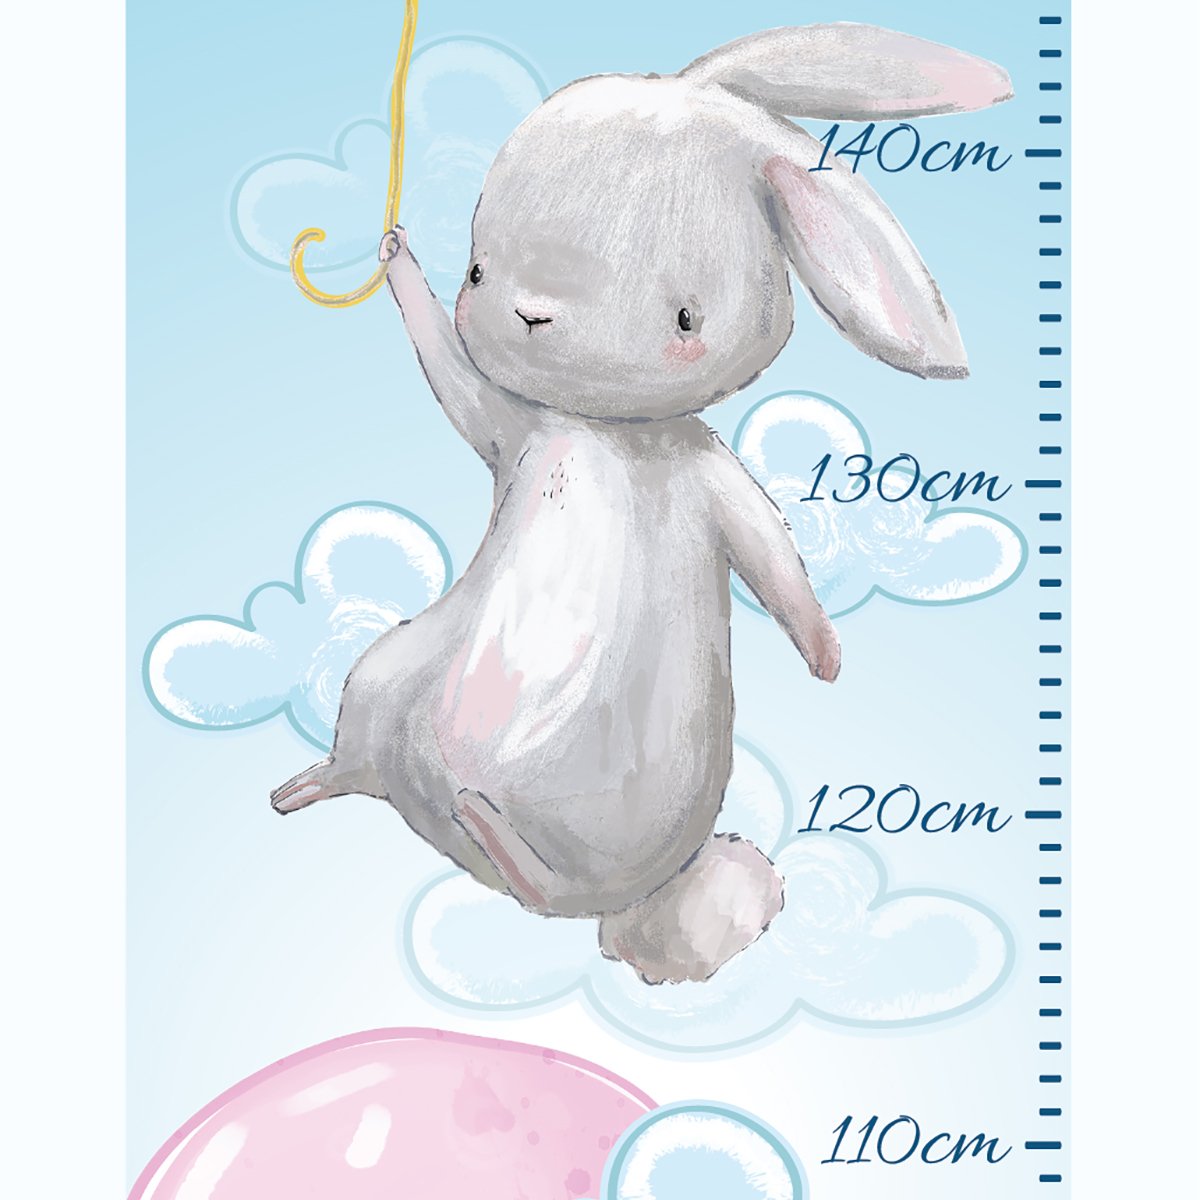 Naklejka na ścianę miarka wzrostu - różowy balonik i latające króliczki#kolor_rozowy